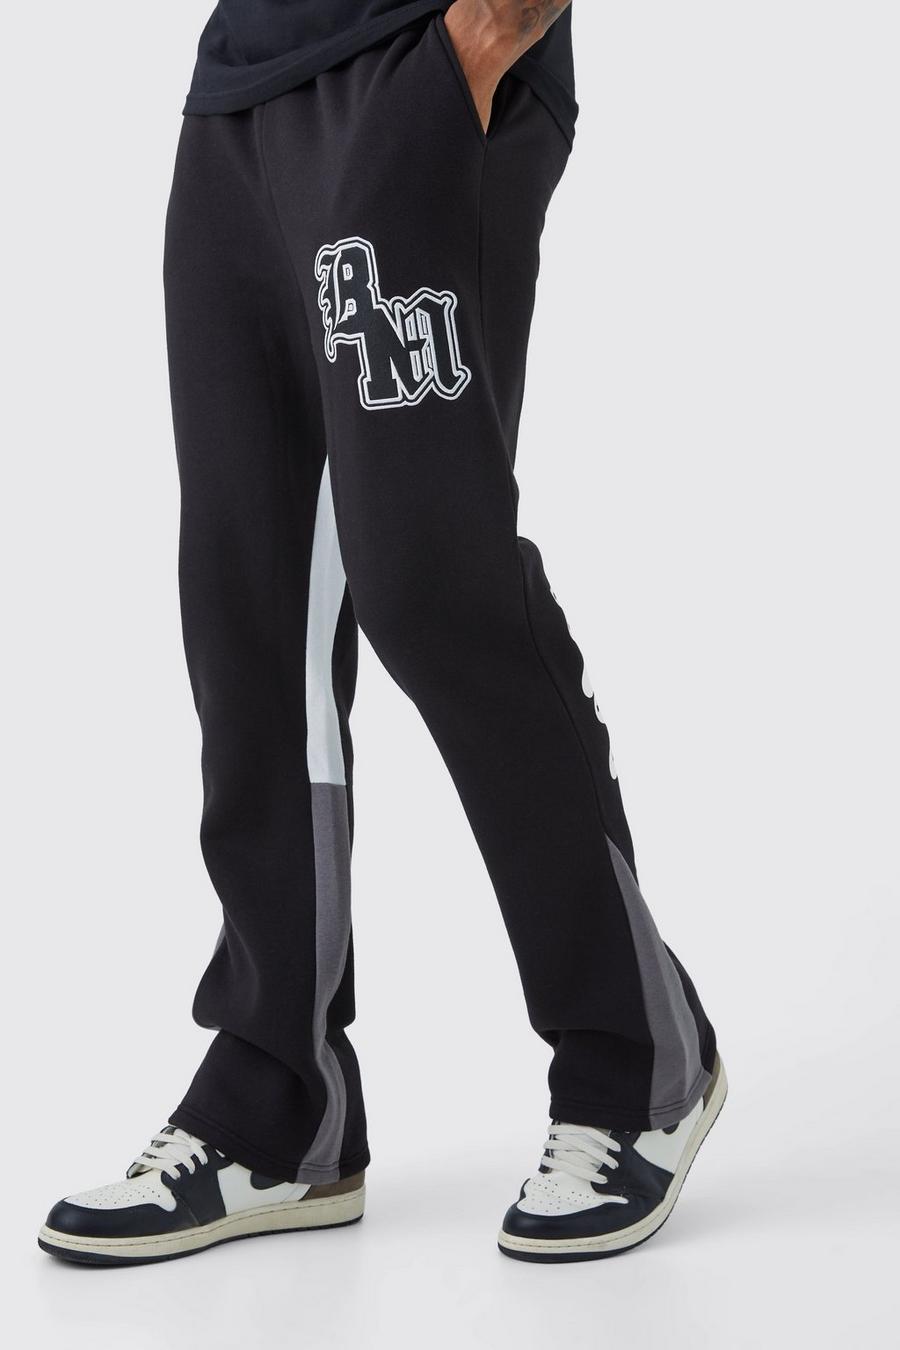 Pantalón deportivo Tall con BM en contraste y refuerzo, Black nero